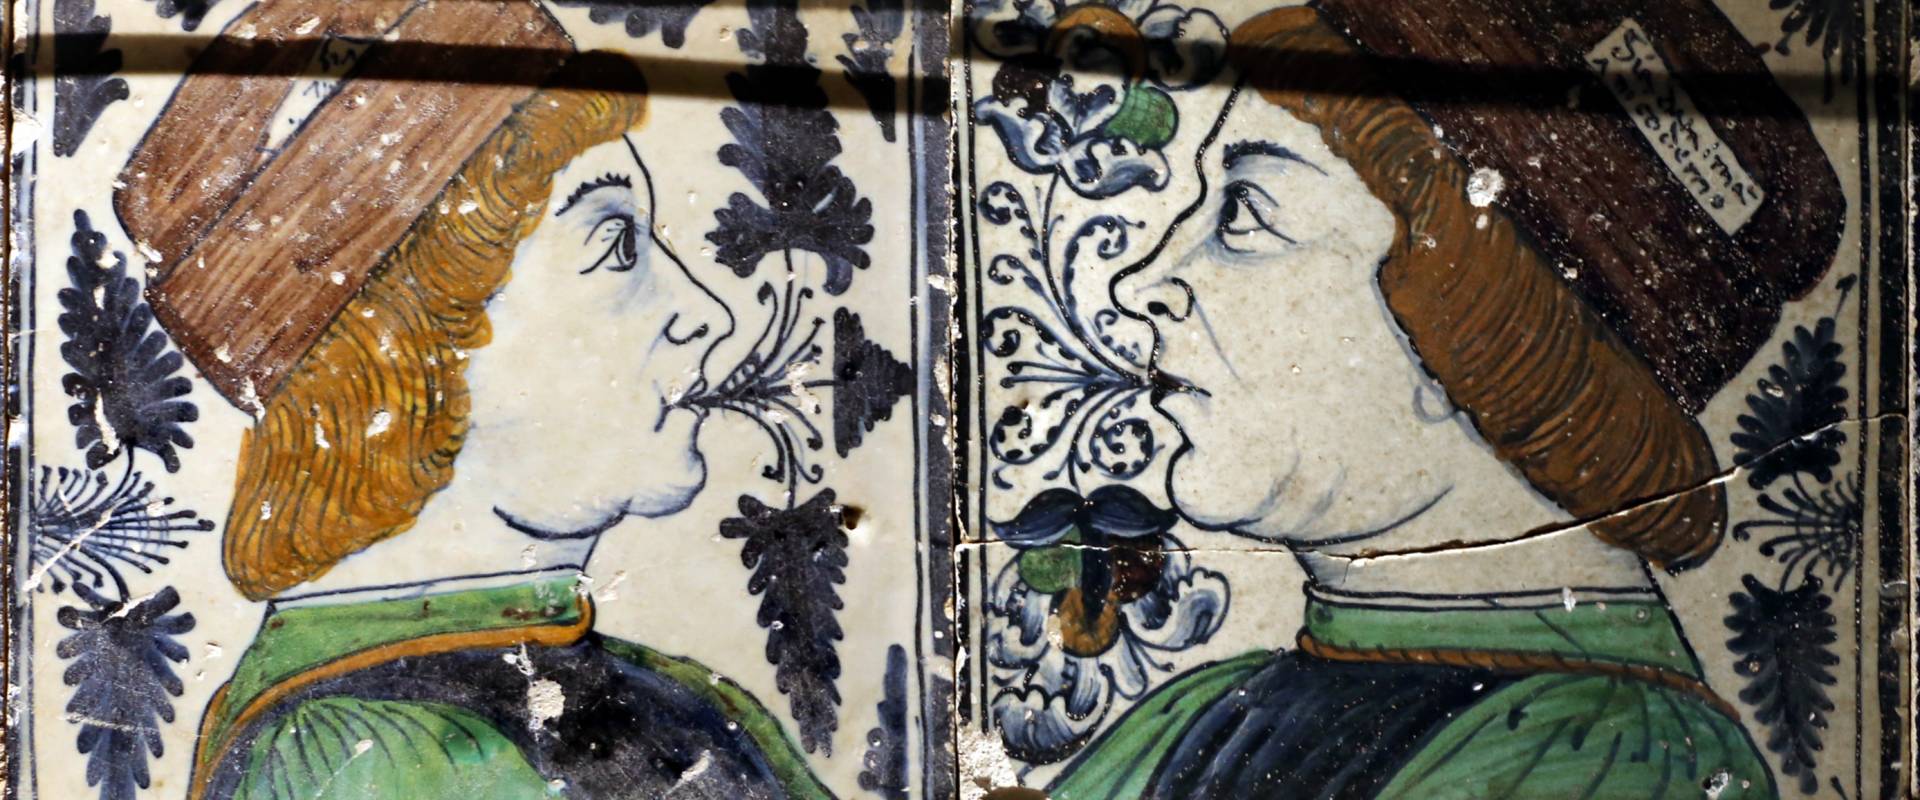 Bottega pesarese, pavimento maiolicato dal monastero di san paolo a parma, 1470-82 ca., busti di profilo affrontati foto di Sailko